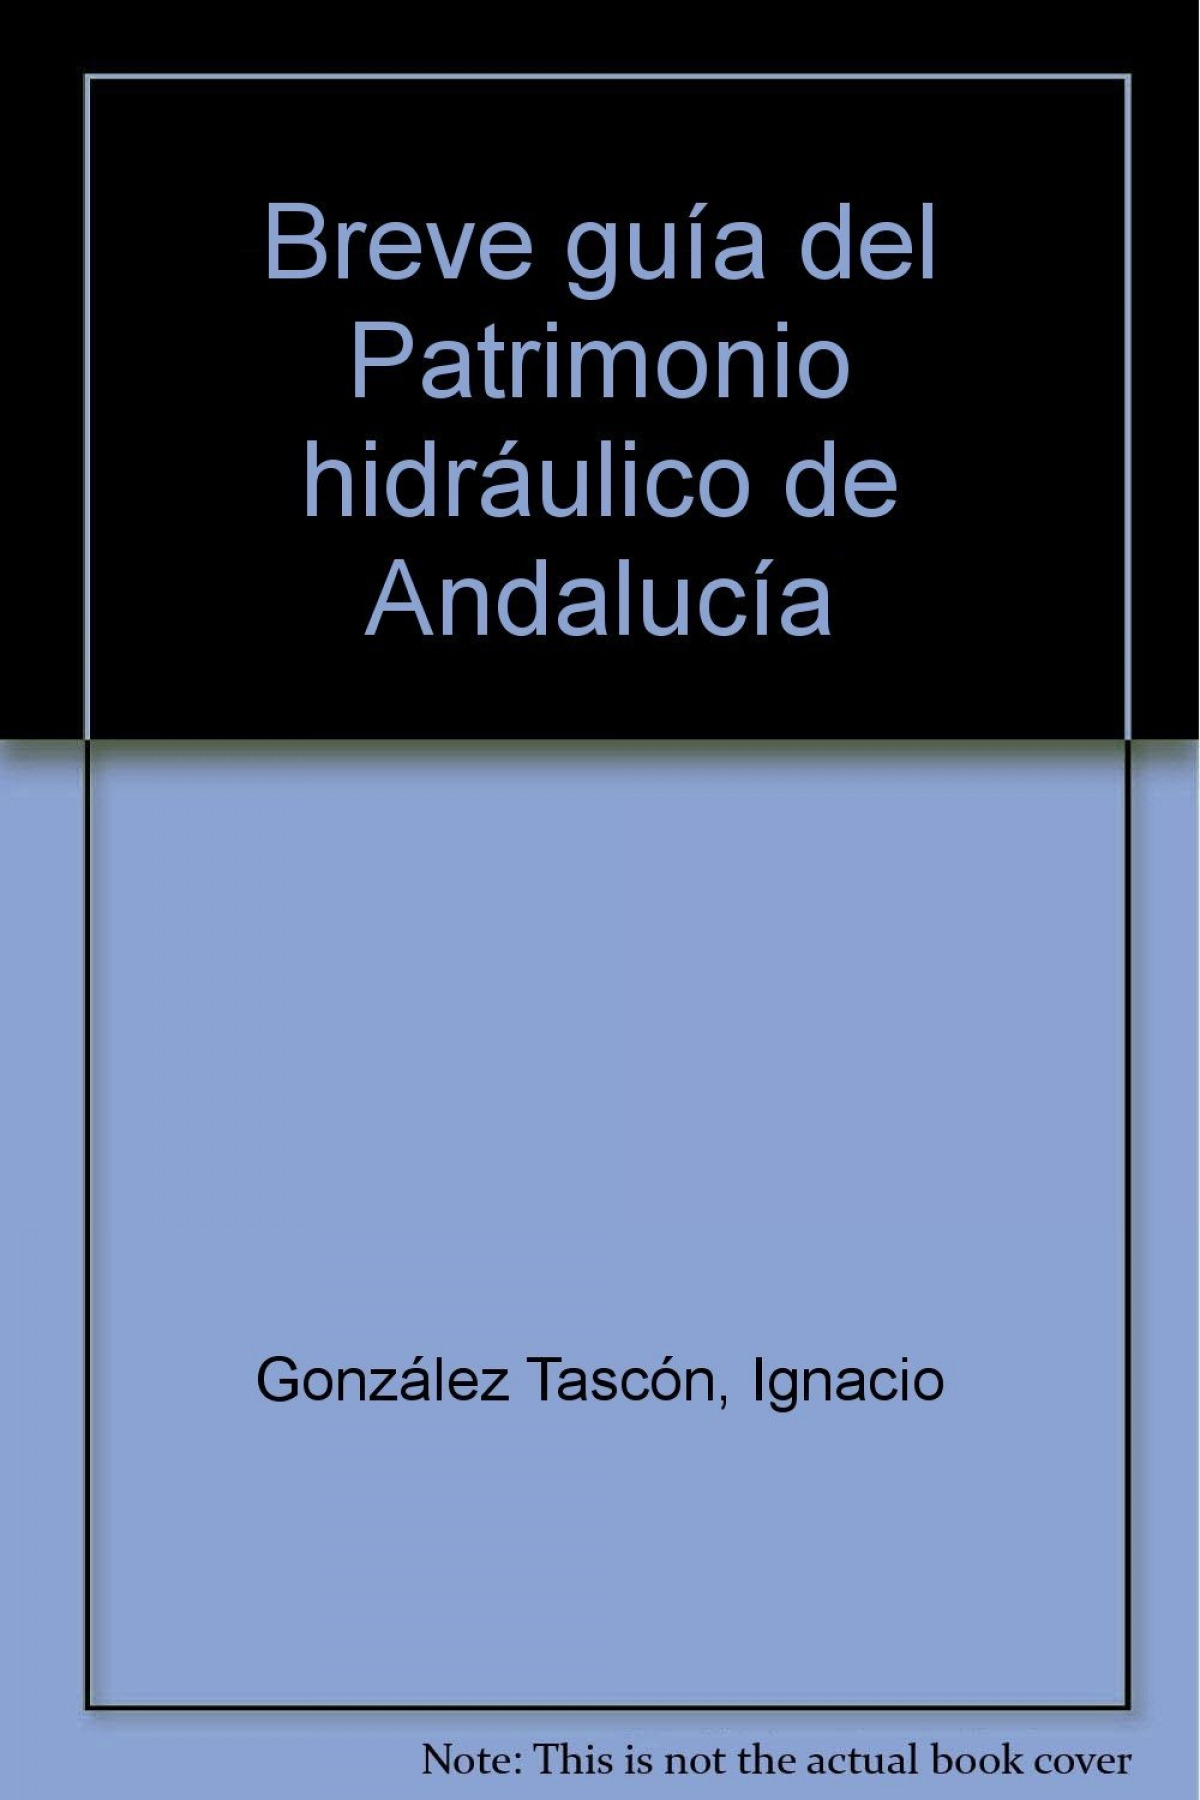 Breve guía del Patrimonio hidráulico de Andalucía - González Tascón, Ignacio